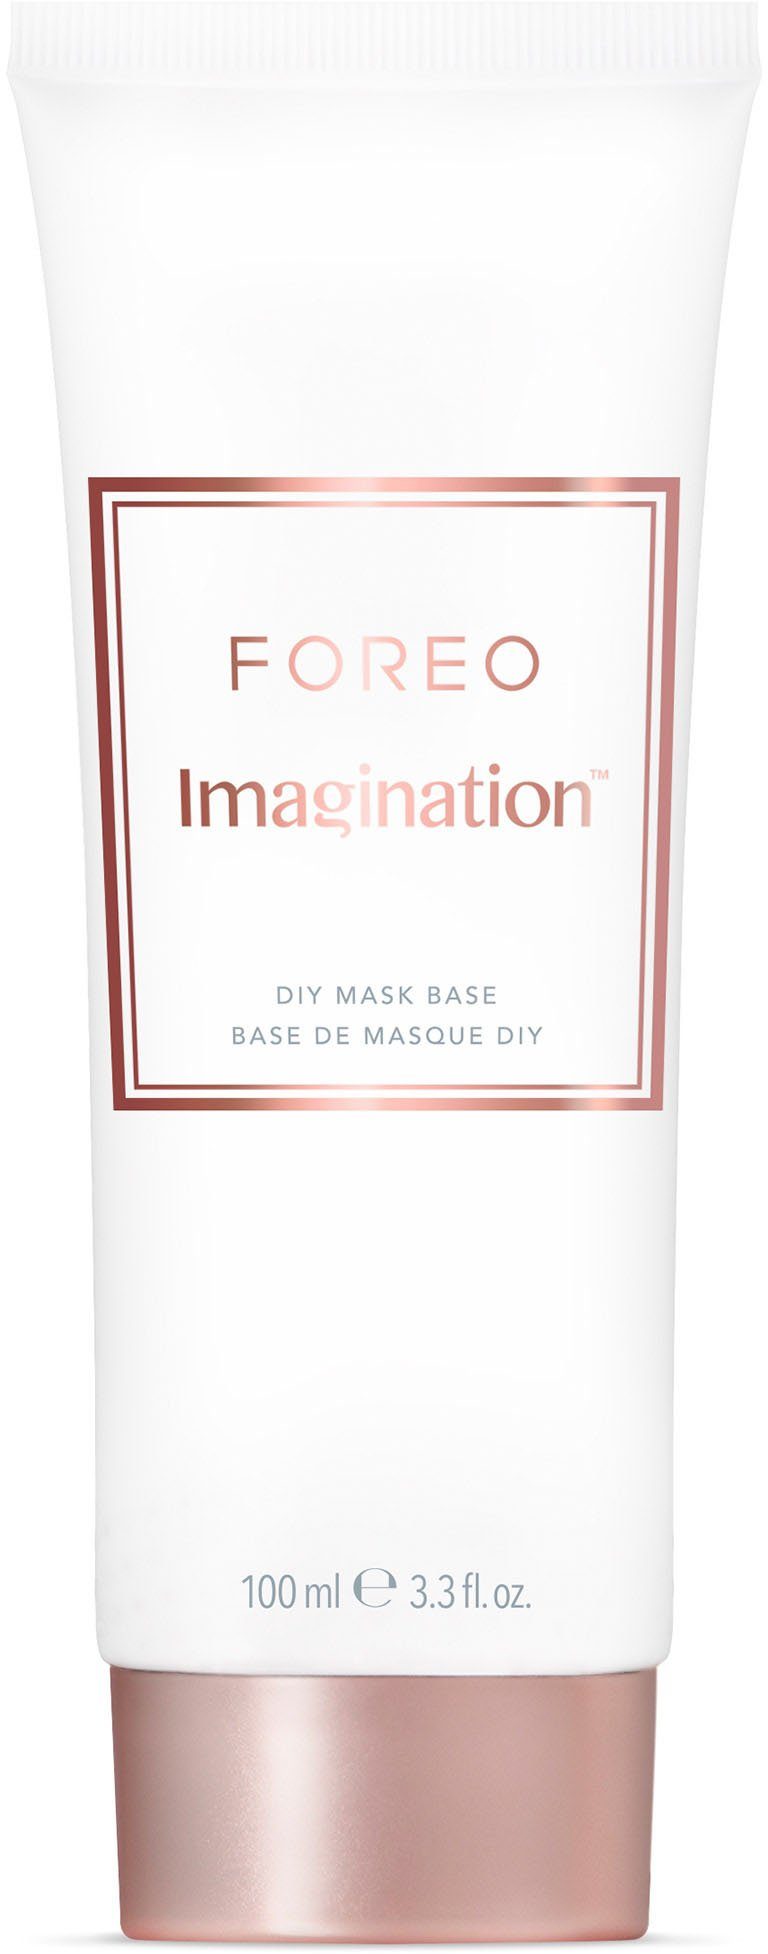 100ml Base Gesichtsmaske Imagination Mask FOREO DIY